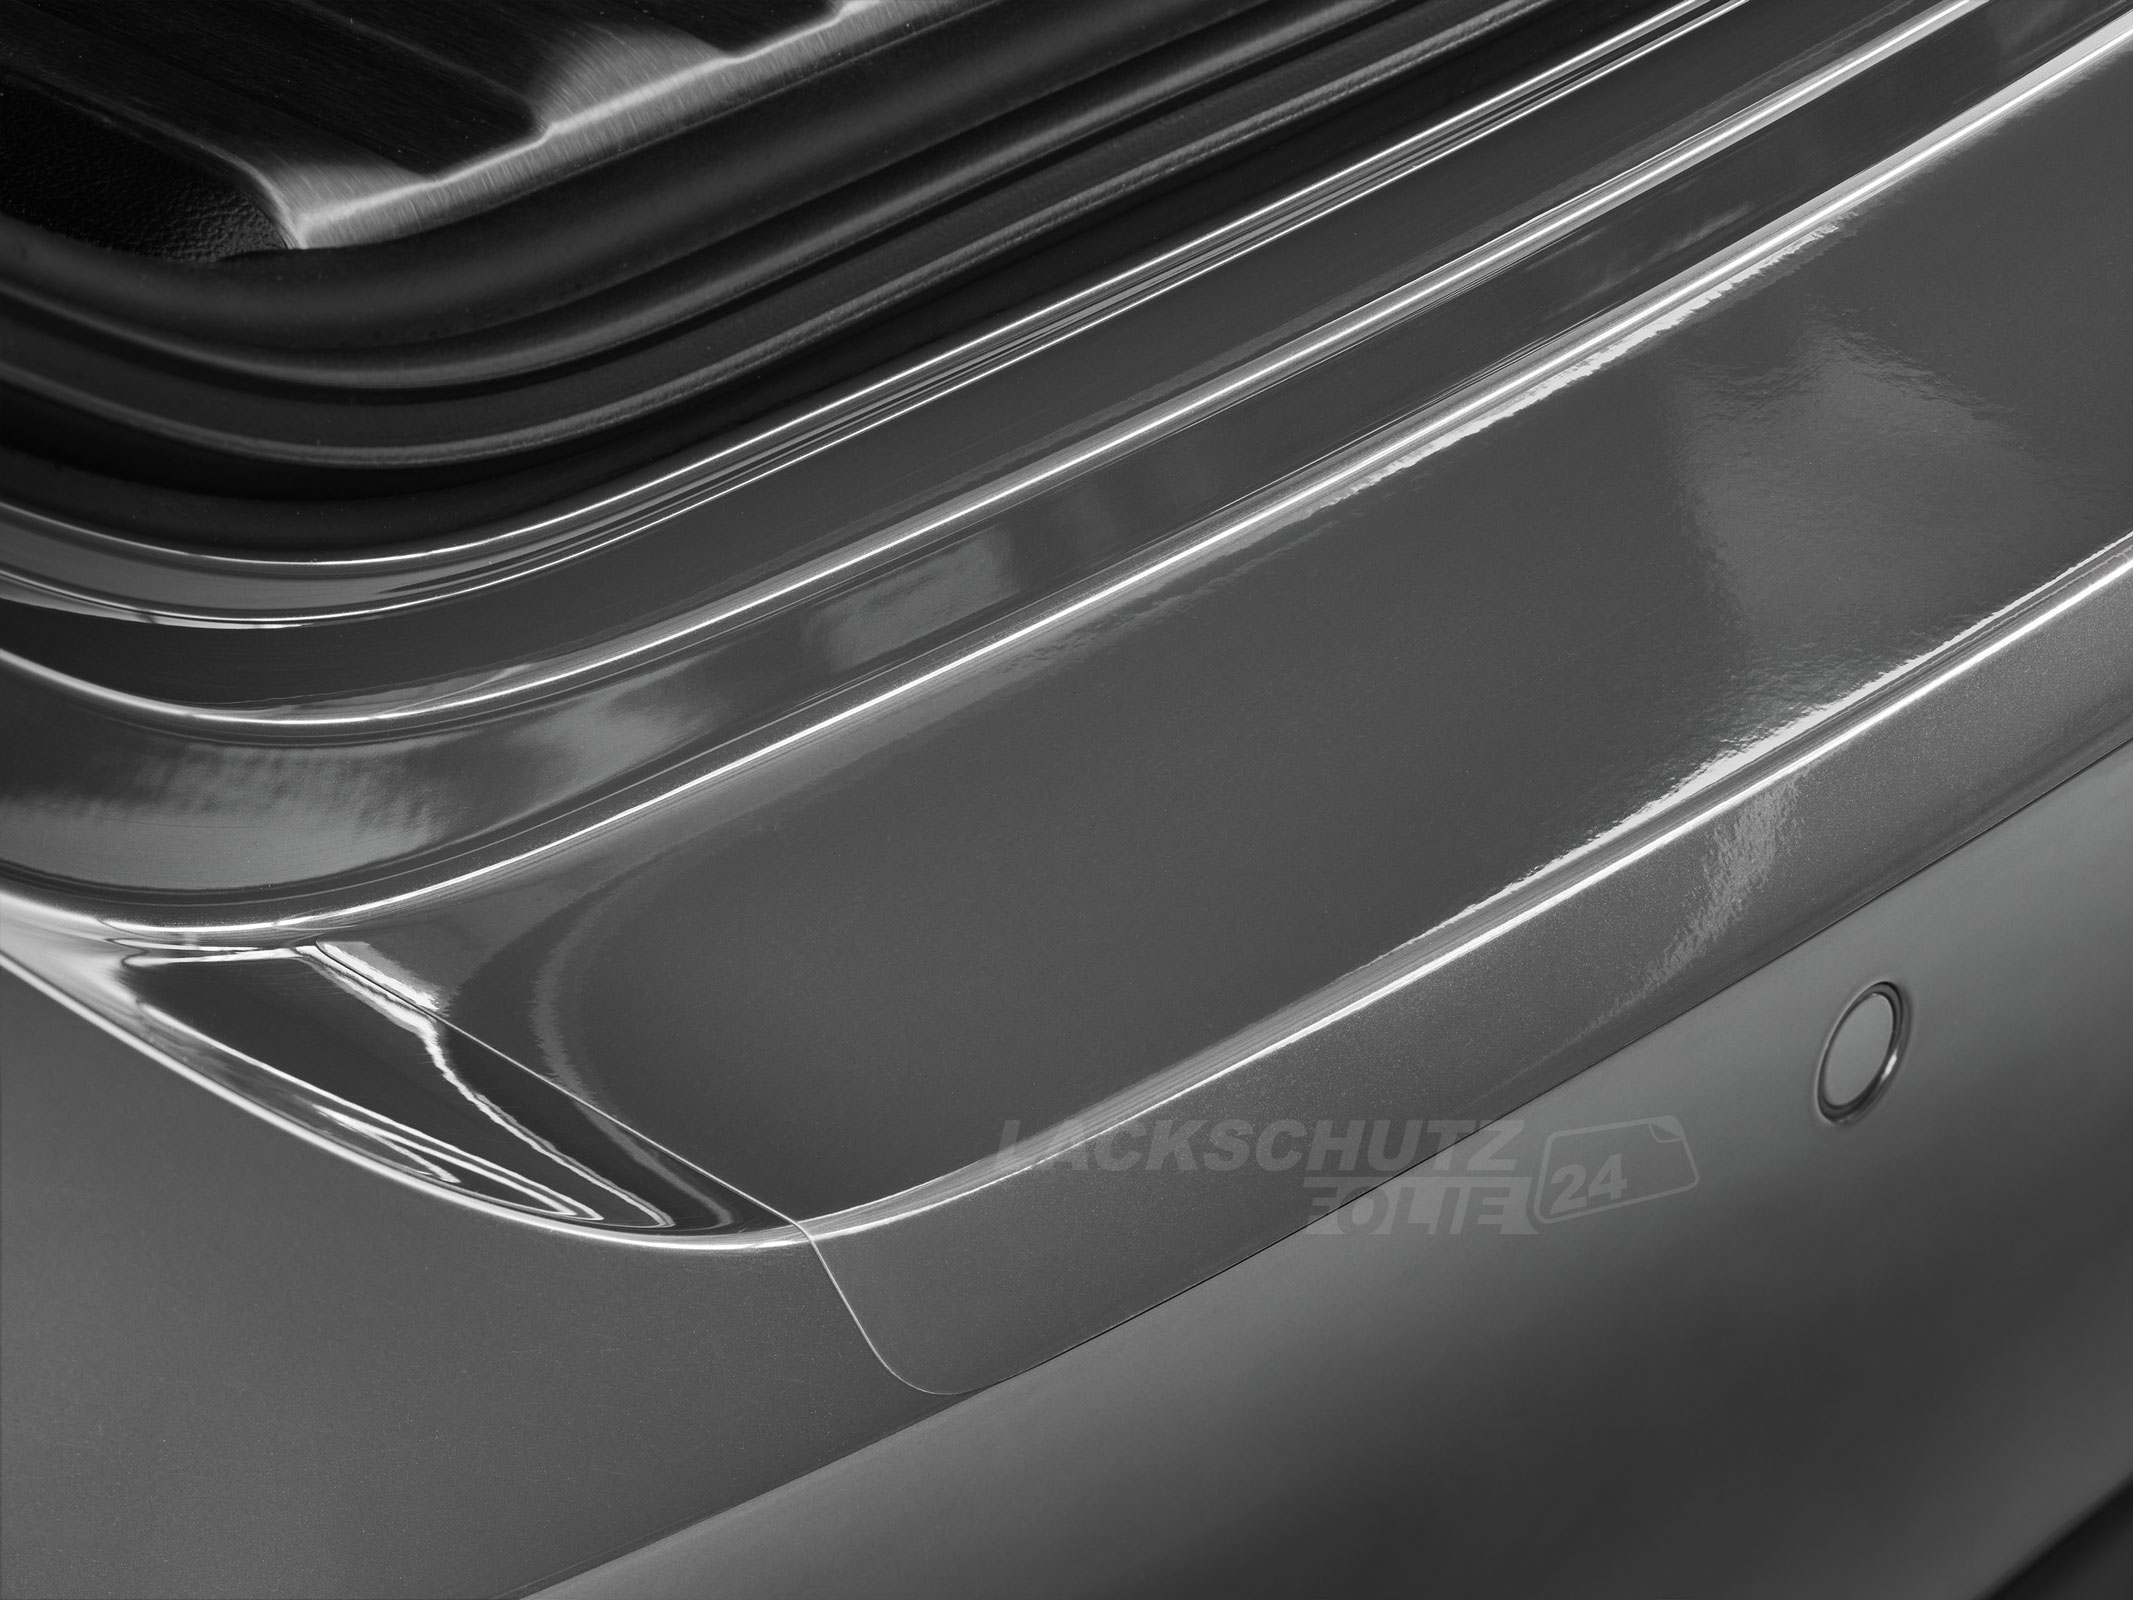 Ladekantenschutzfolie - Transparent Glatt Hochglänzend 240 µm stark für VW / Volkswagen Arteon ab BJ 07/2017